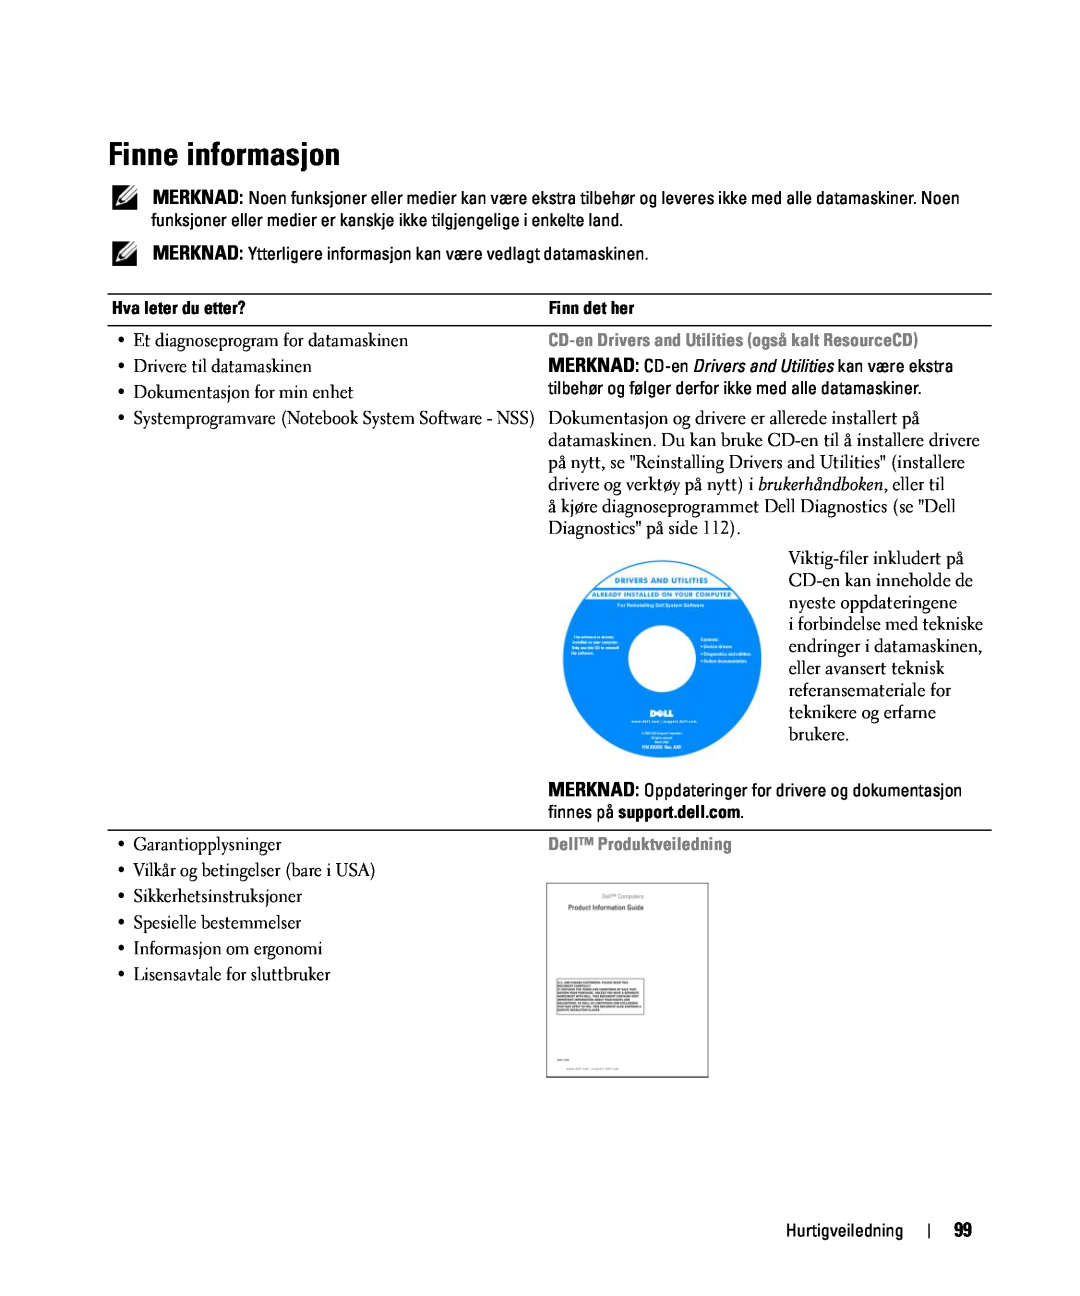 Dell JF854 manual Finne informasjon, Hva leter du etter?, Finn det her, CD-en Drivers and Utilities også kalt ResourceCD 